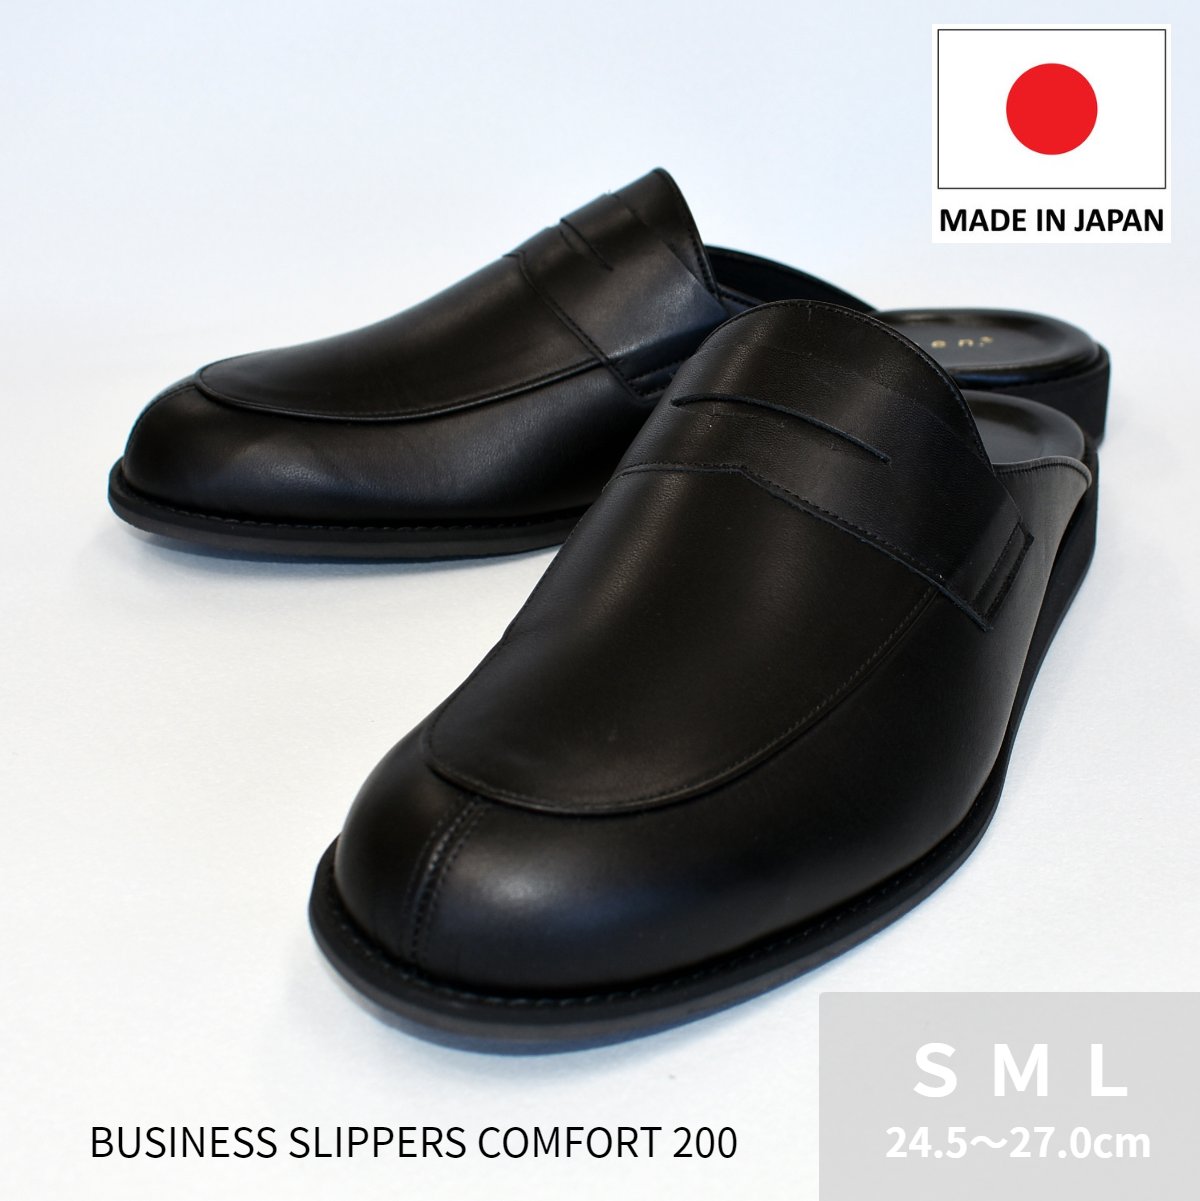 スーパー セール SALE ラッキーベル ビジネススリッパ コンフォート200 イーグリーン e-green メンズ 本革 日本製 JAPAN オフィス サンダル スリッパ スリッポン 革靴 ビジネスシューズ